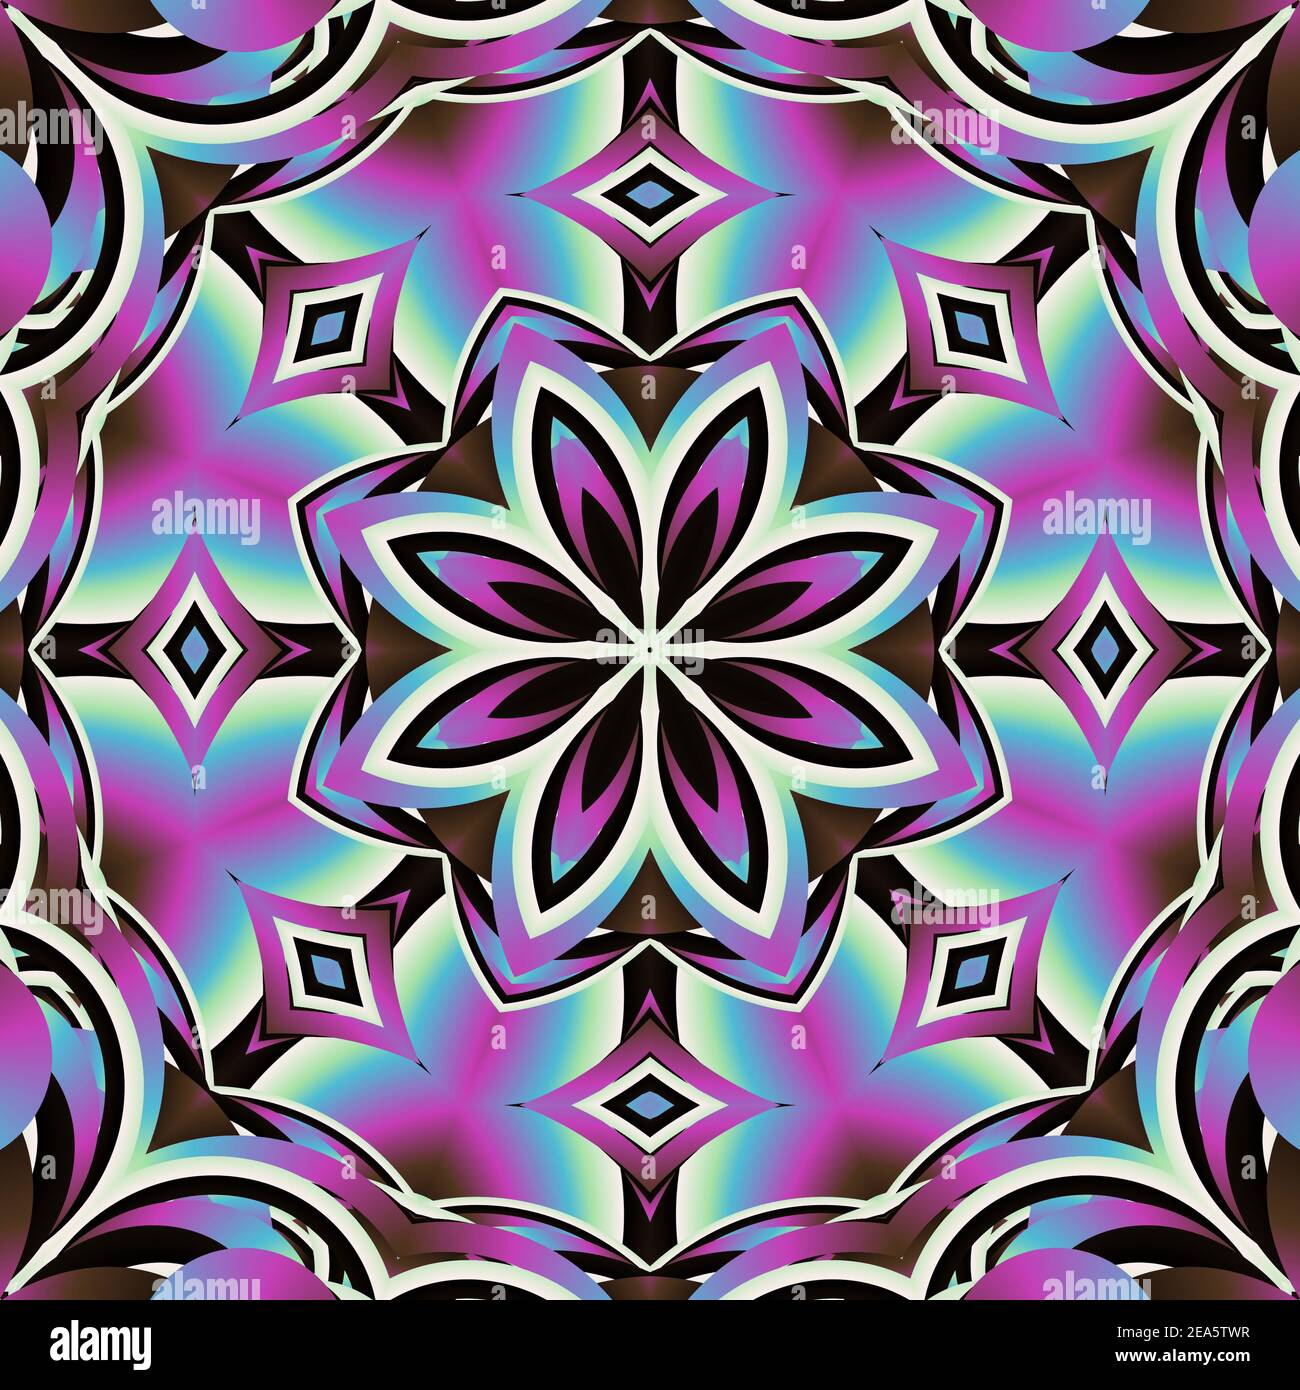 100+] Mandala Wallpapers | Wallpapers.com